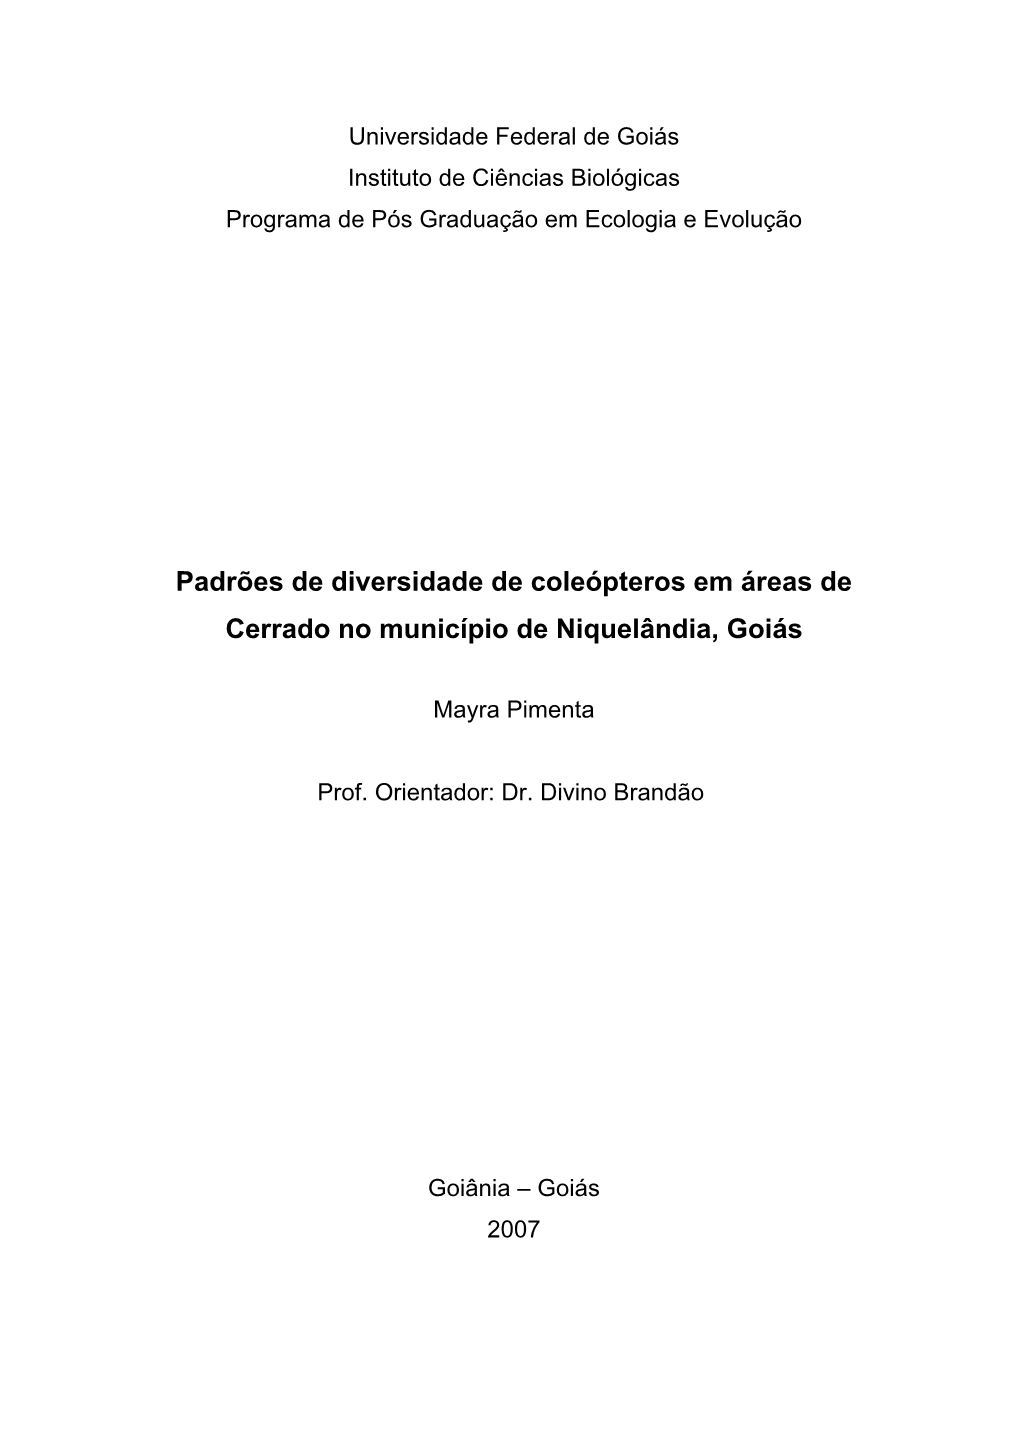 Padrões De Diversidade De Coleópteros Em Áreas De Cerrado No Município De Niquelândia, Goiás